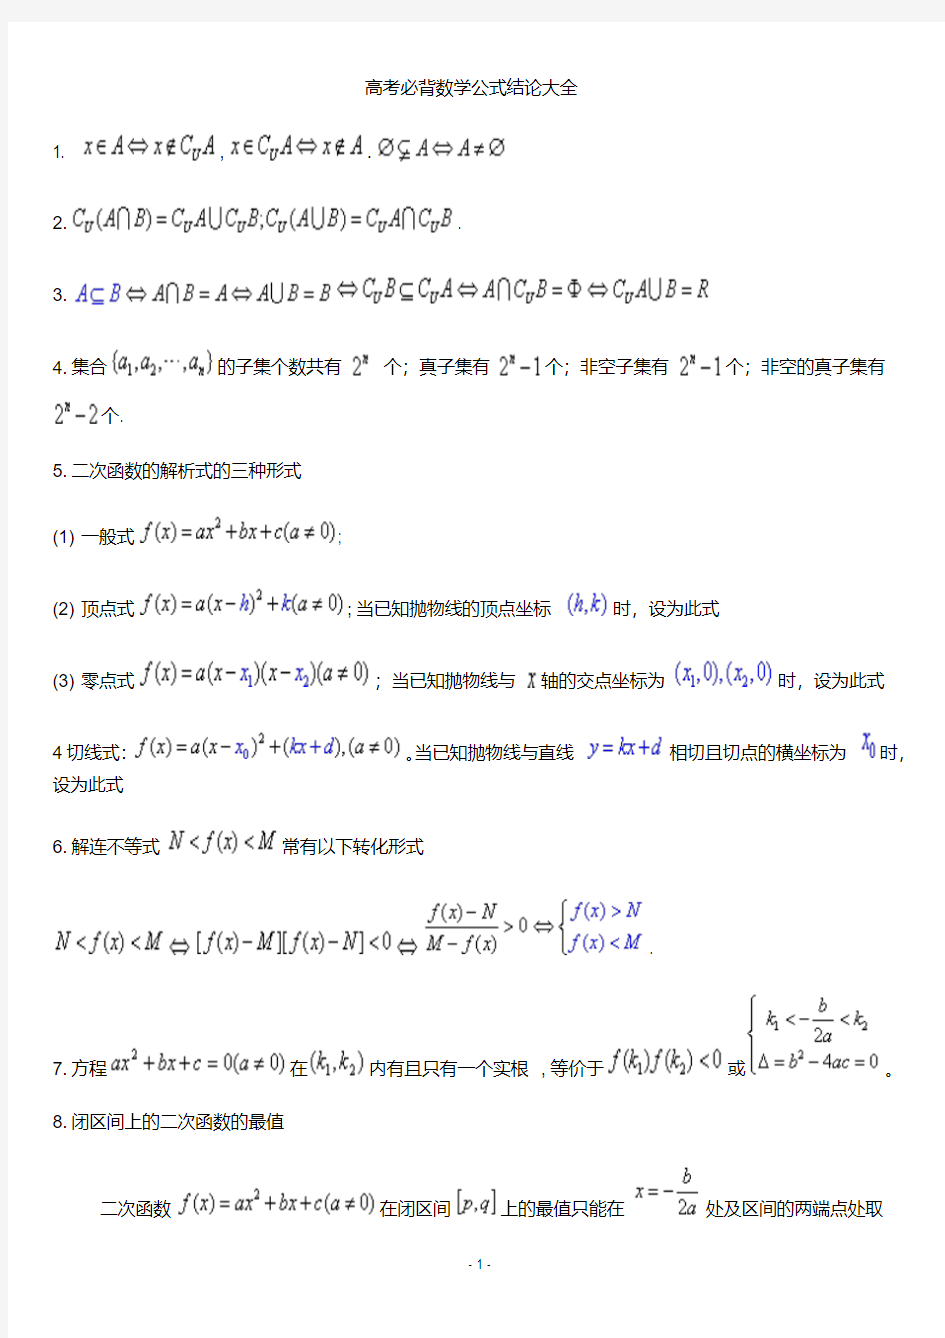 高考必备数学公式(全)最完整最新